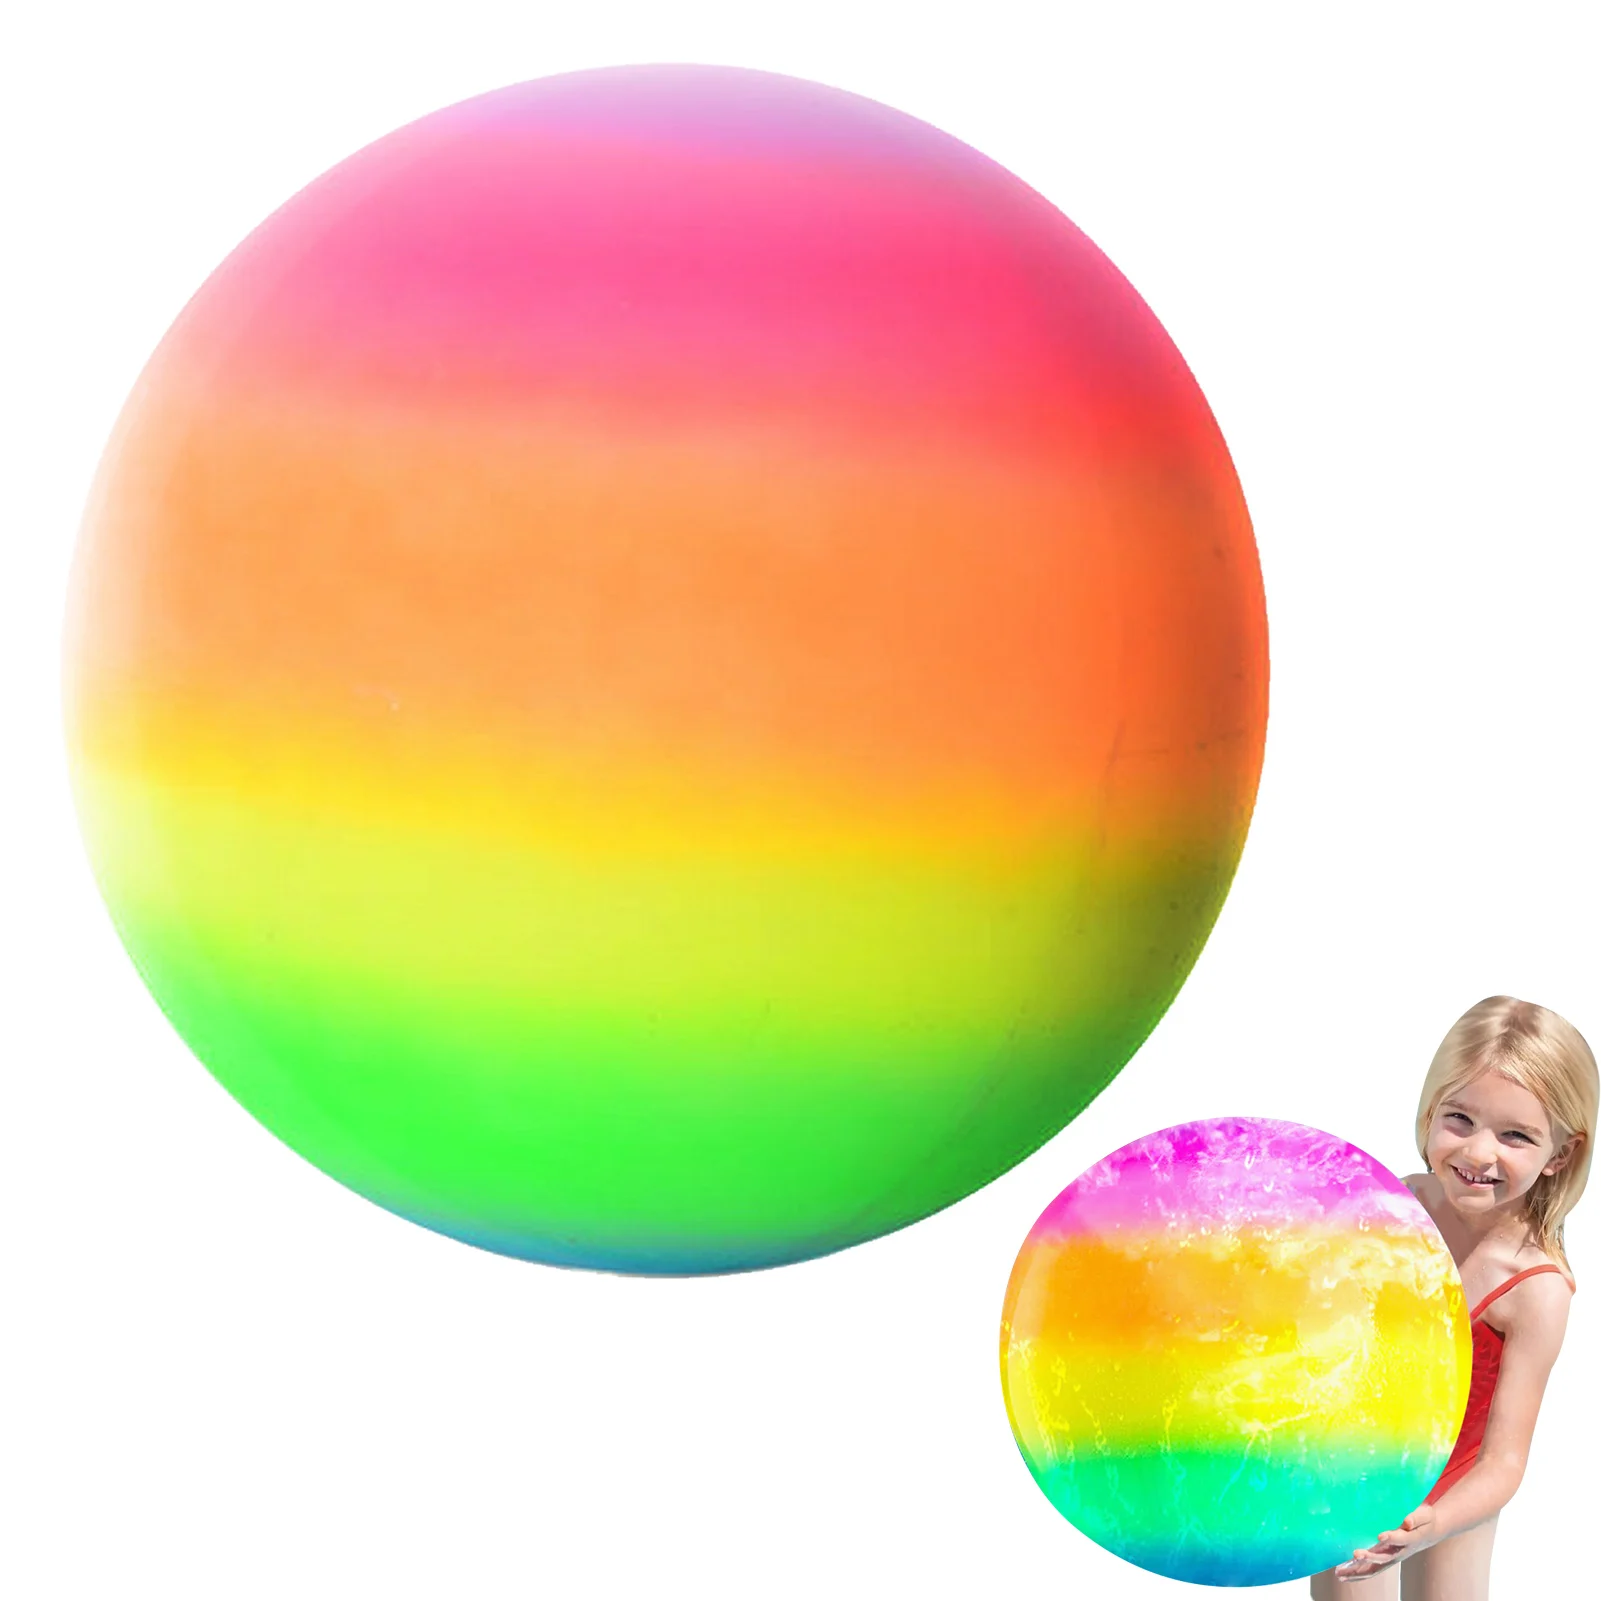 

Мяч для арбуза, пляжный мяч радужного цвета, Радужный мяч для арбуза под водой, игрушка для упражнений, подарки для купания для детей